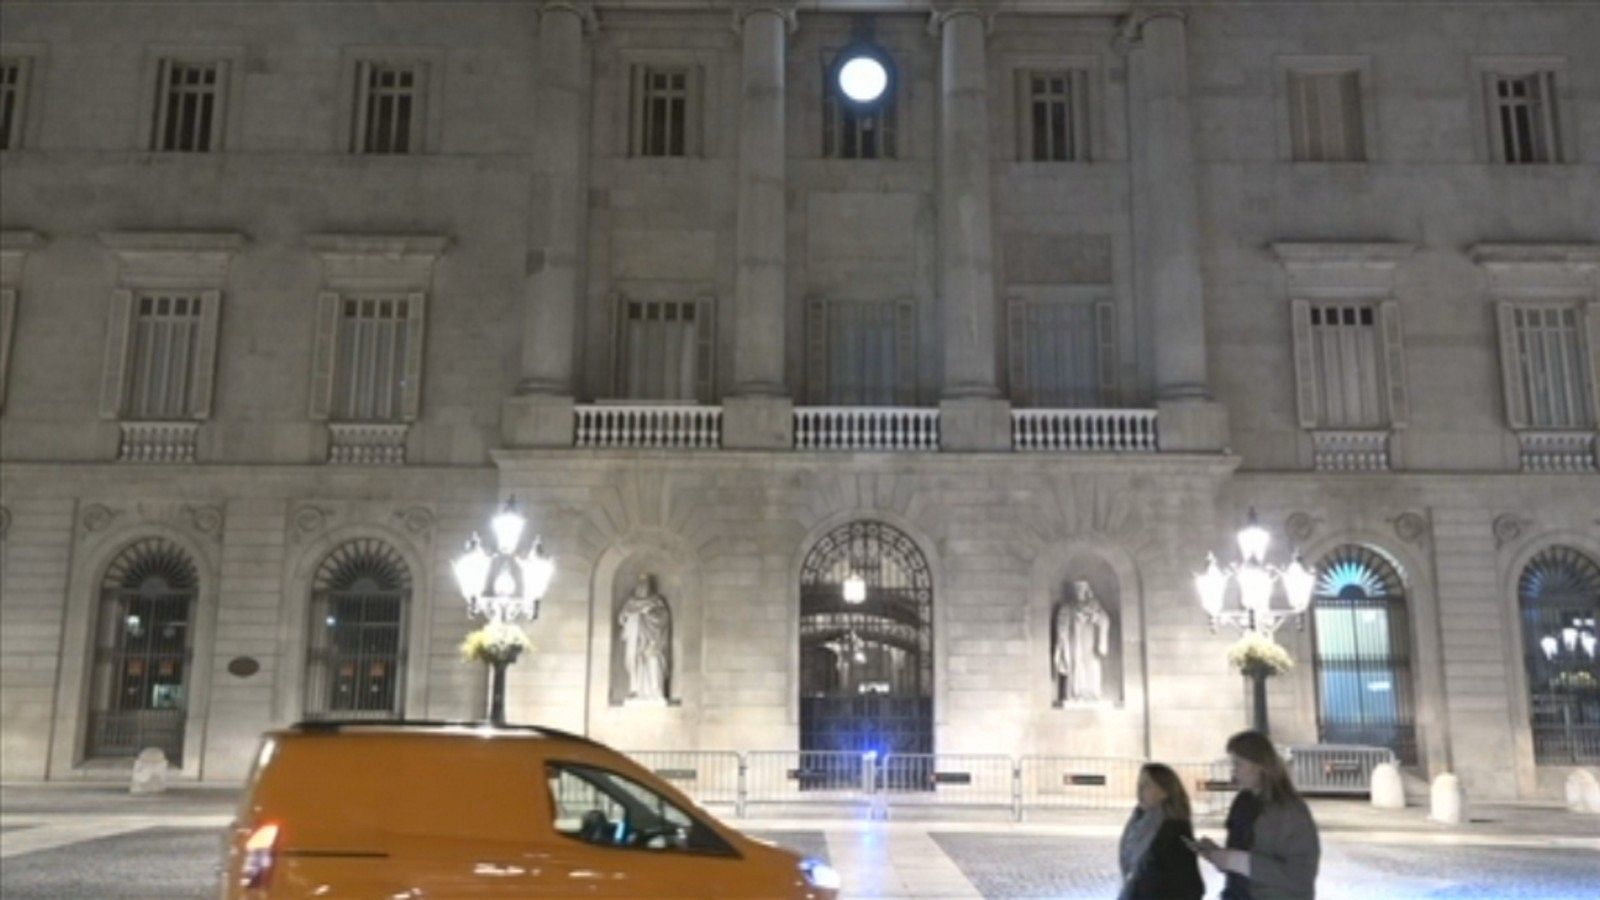 Imagen de la fachada del Ayuntamiento de Barcelona en la plaza Sant Jaume tras la decisión del consistorio de retirar el lazo amarillo atendiendo la orden de la Junta Electoral.